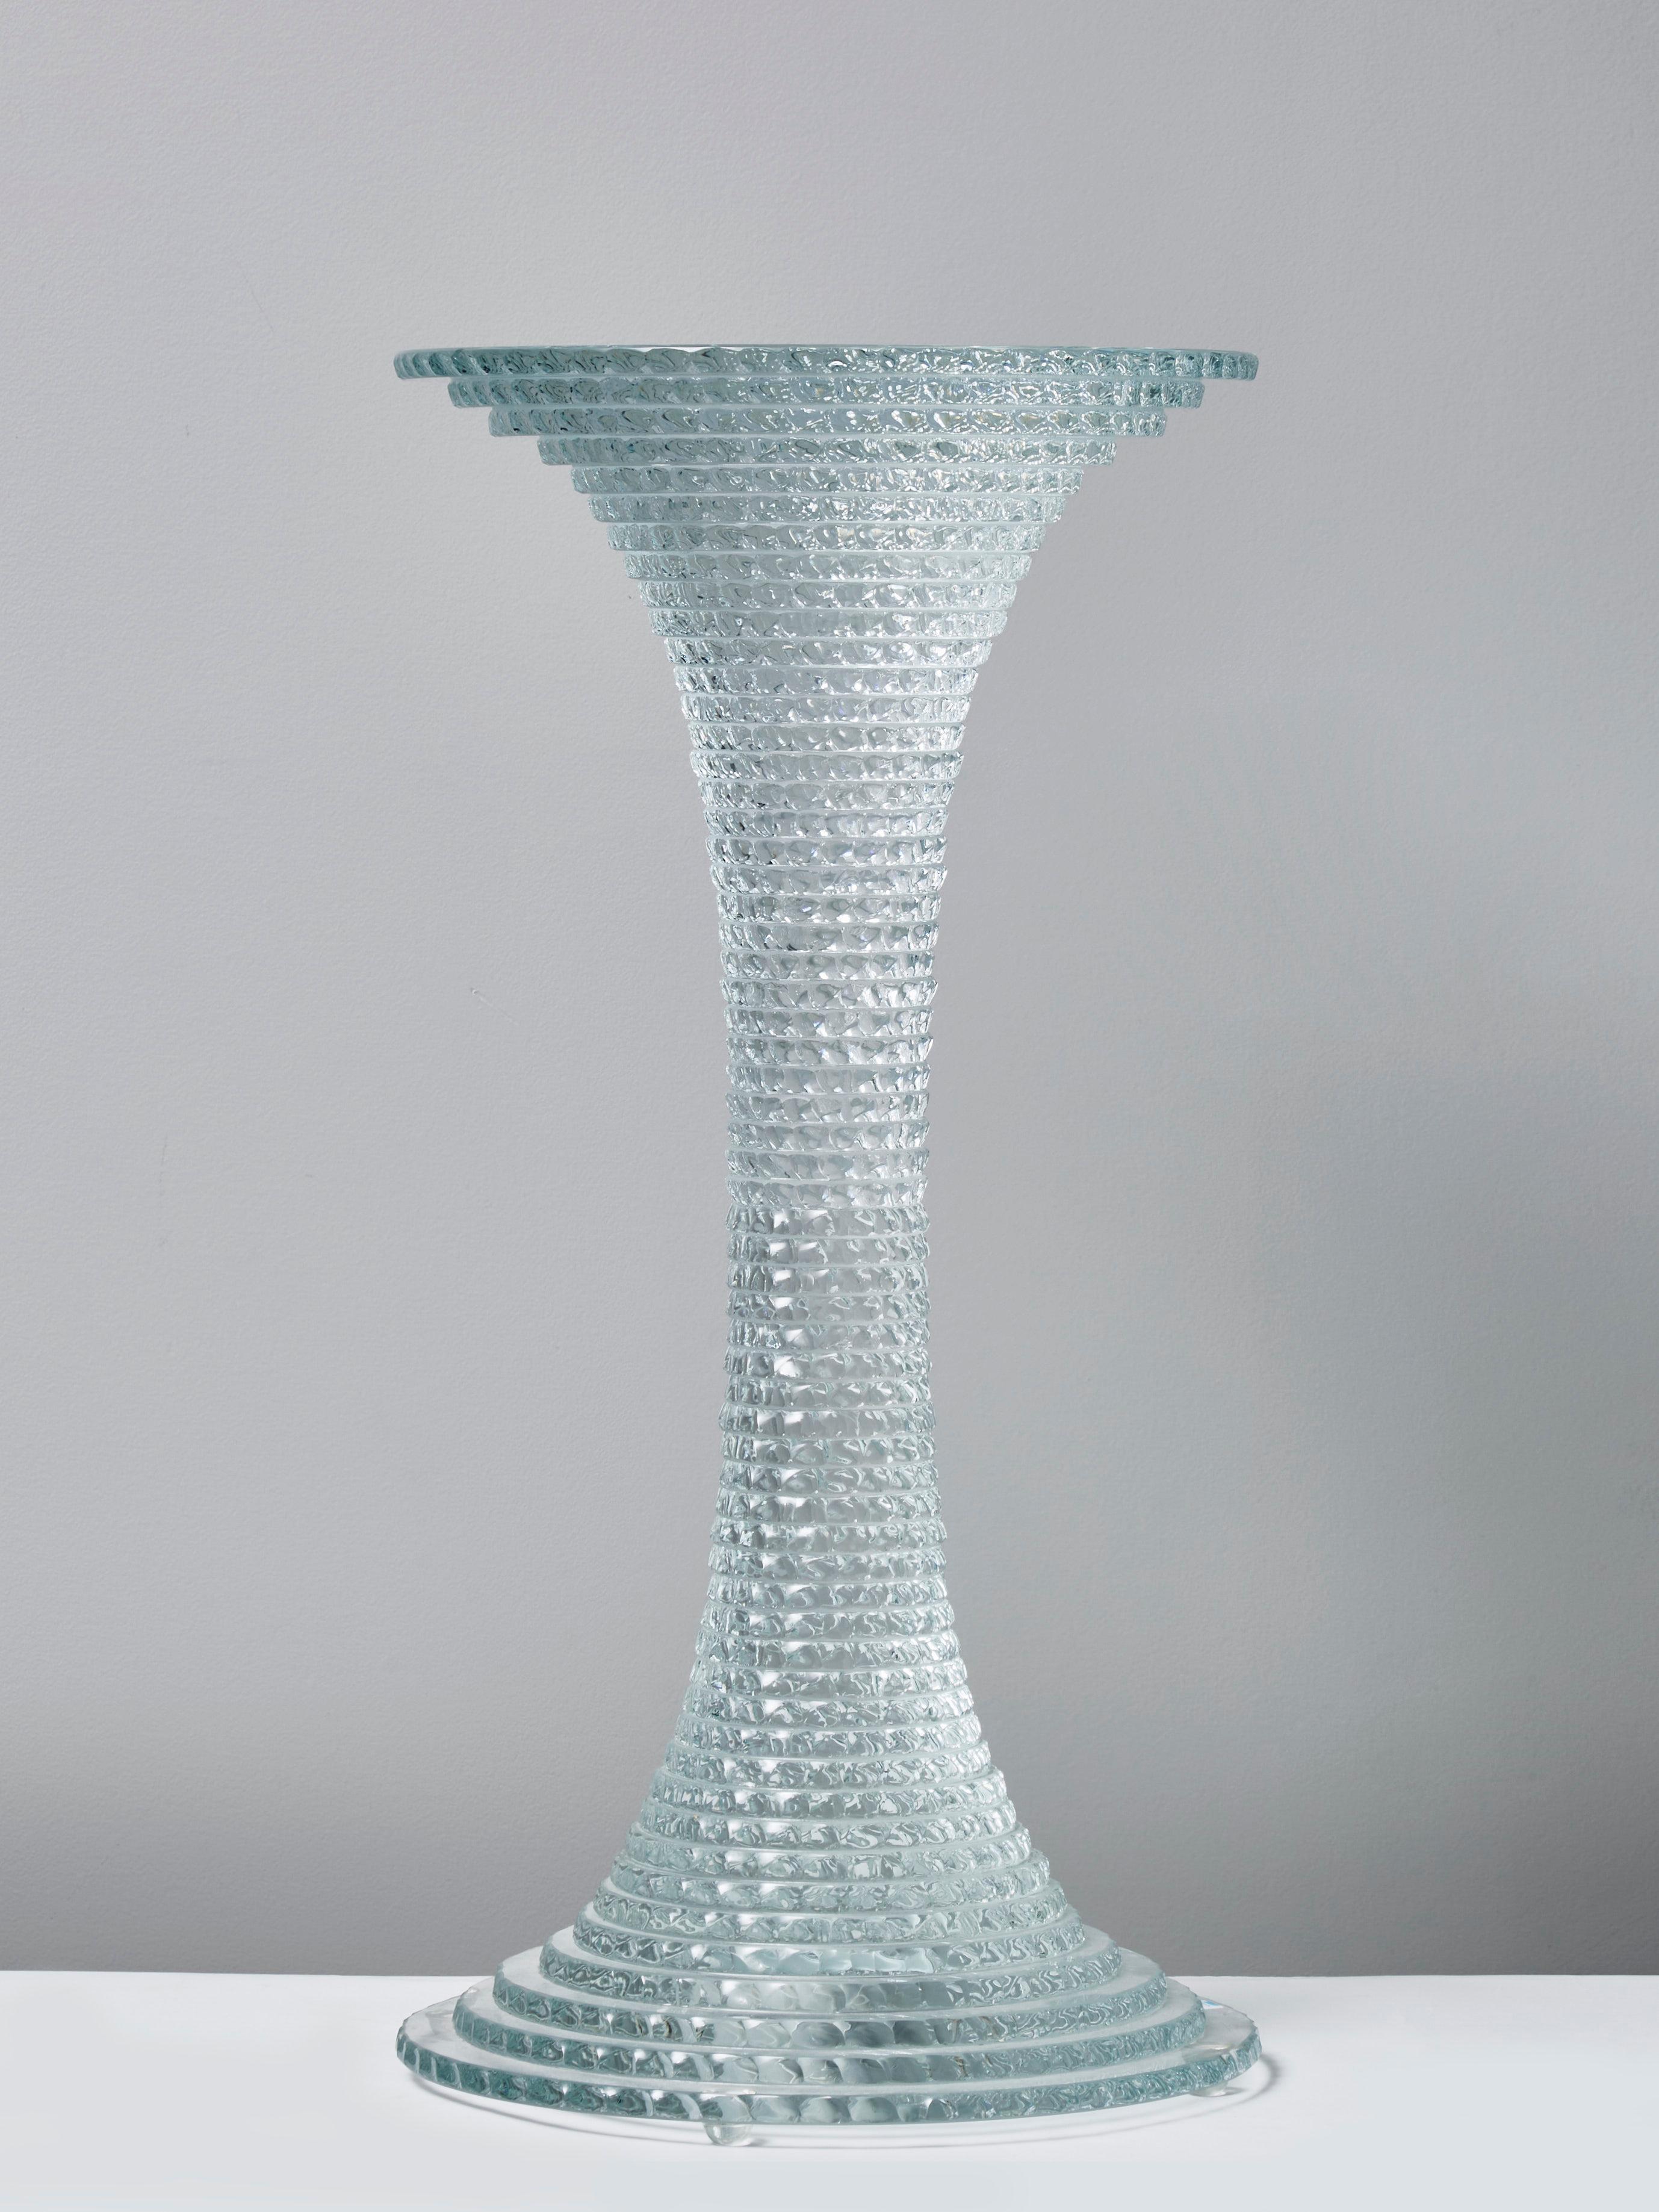 Lampe aus geschliffenem Glas, nummeriert und signiert von dem französischen Künstler Laurent Beyne.